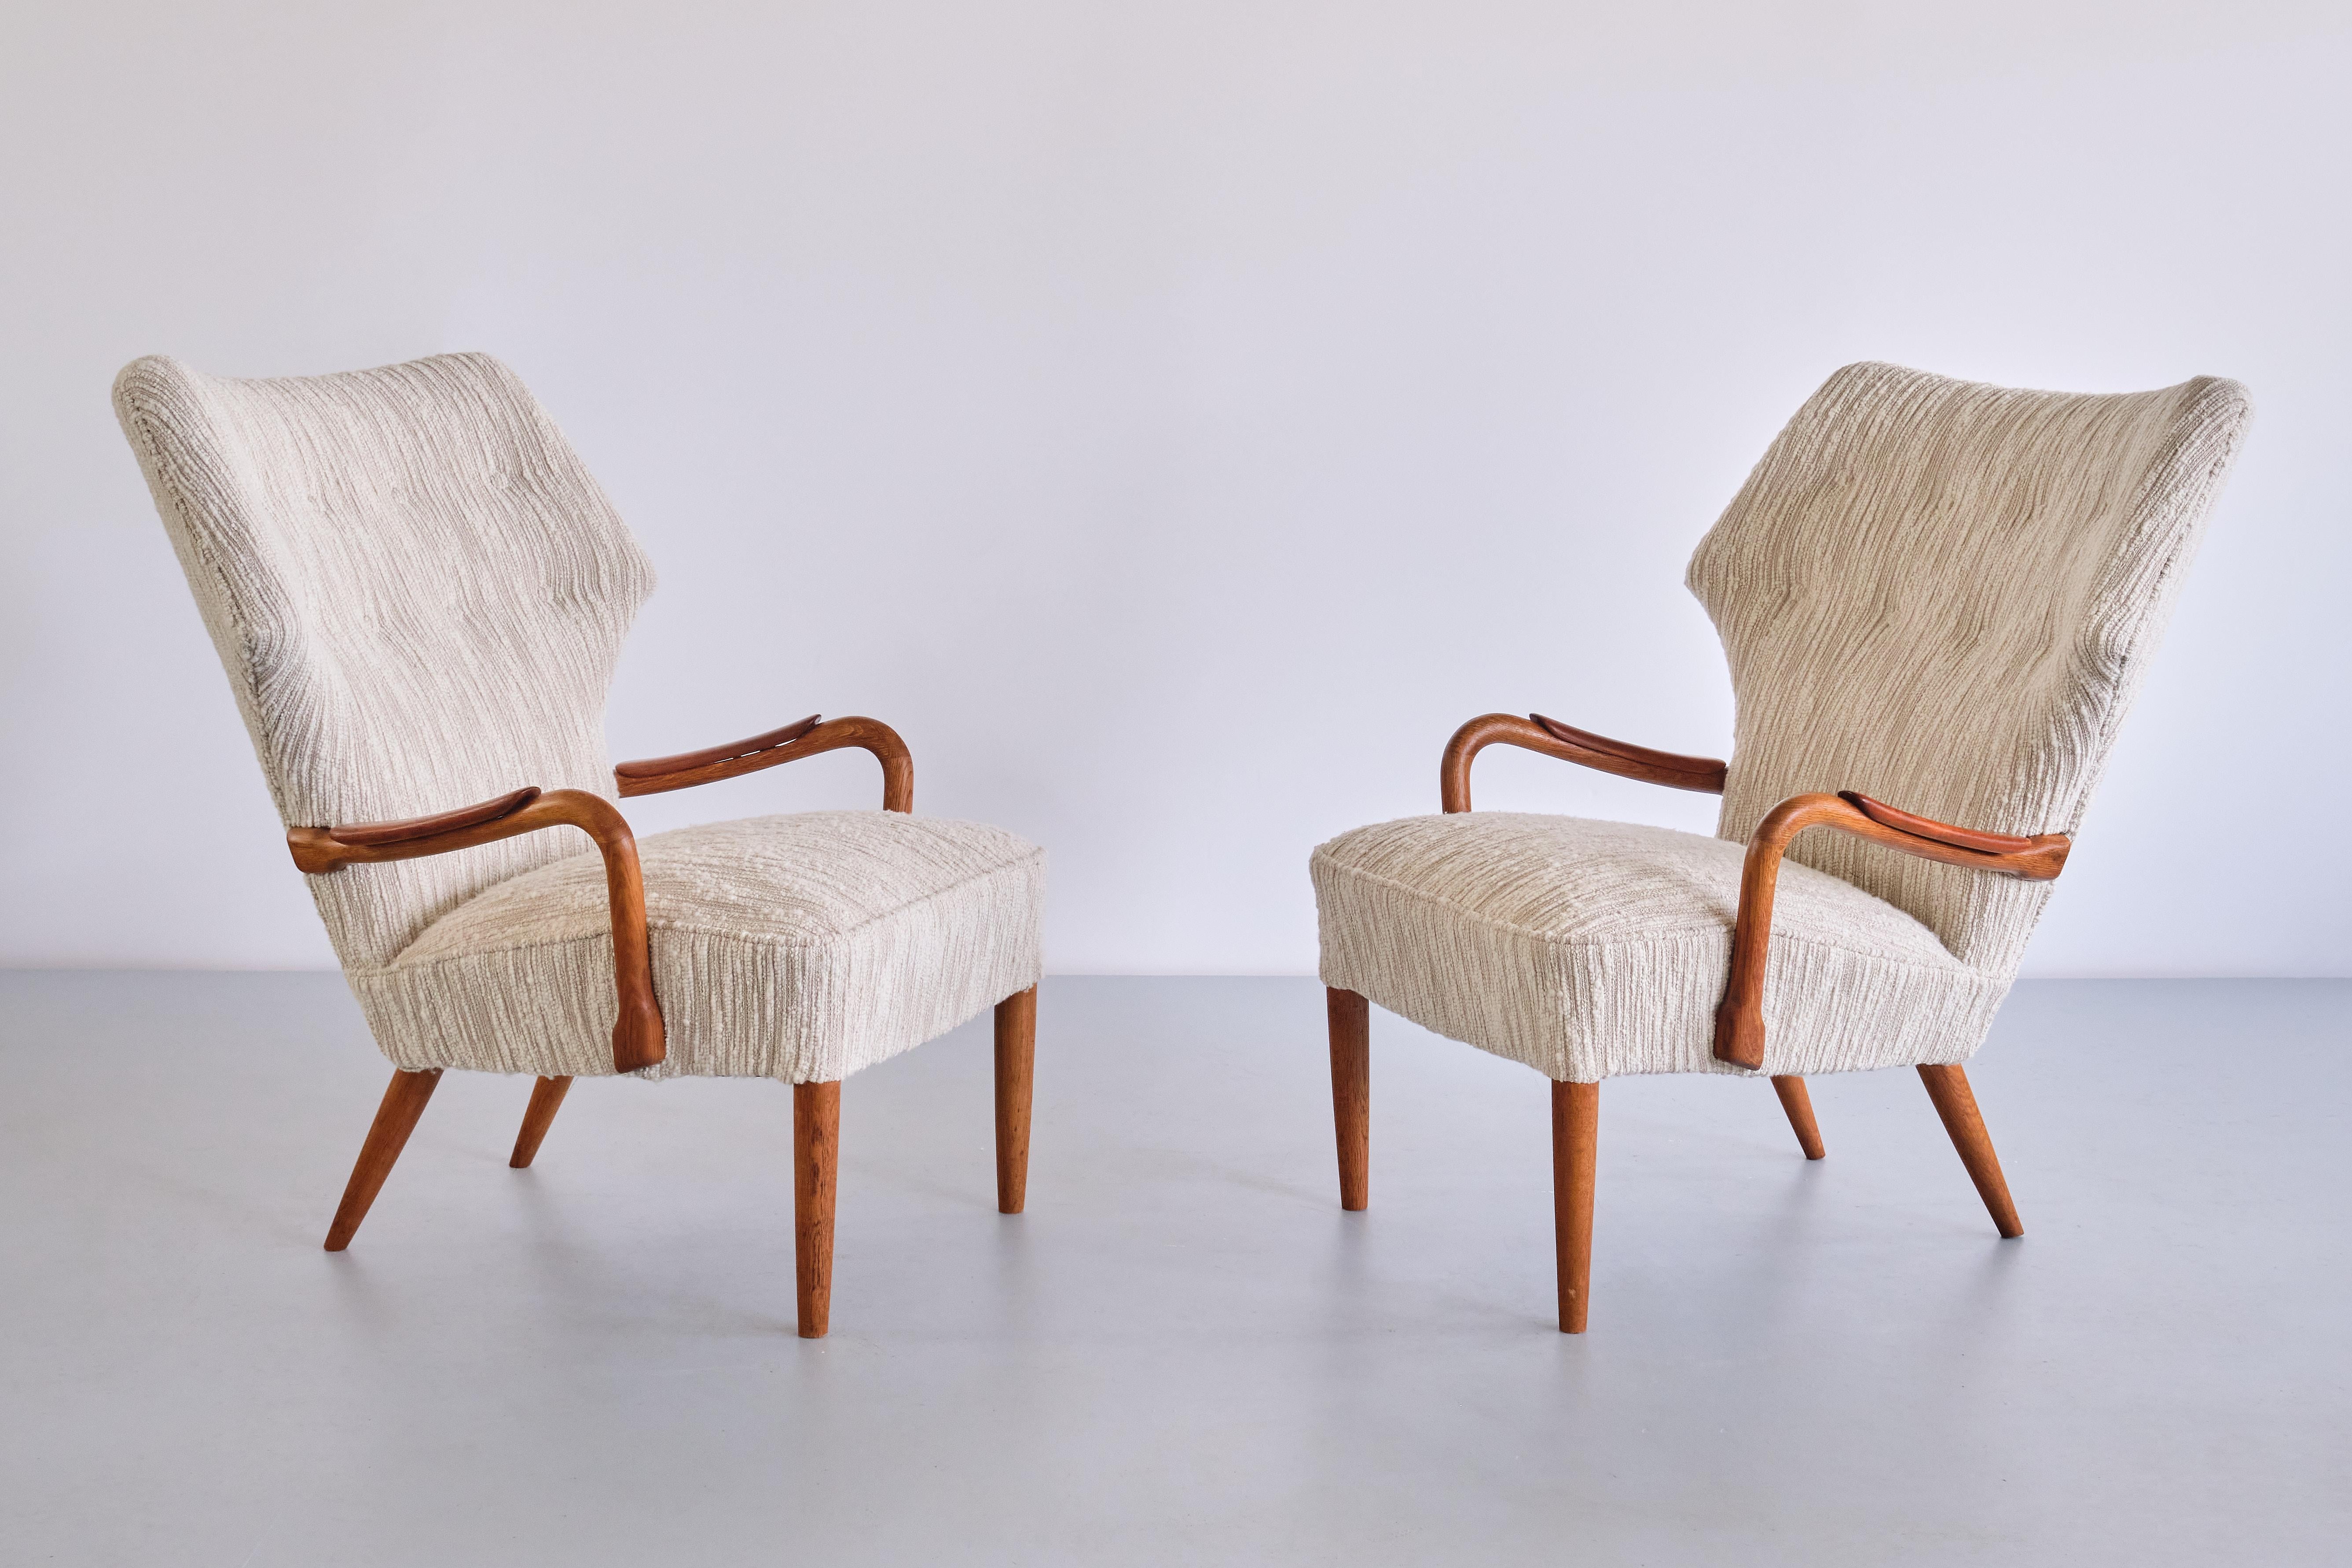 Dieses seltene Set, bestehend aus zwei Sesseln und einem passenden Hocker, wurde Mitte der 1950er Jahre von einer dänischen Tischlerei in Roskilde hergestellt.
Das Design der Sessel zeichnet sich durch die leicht zurückgelehnte, flügelförmige